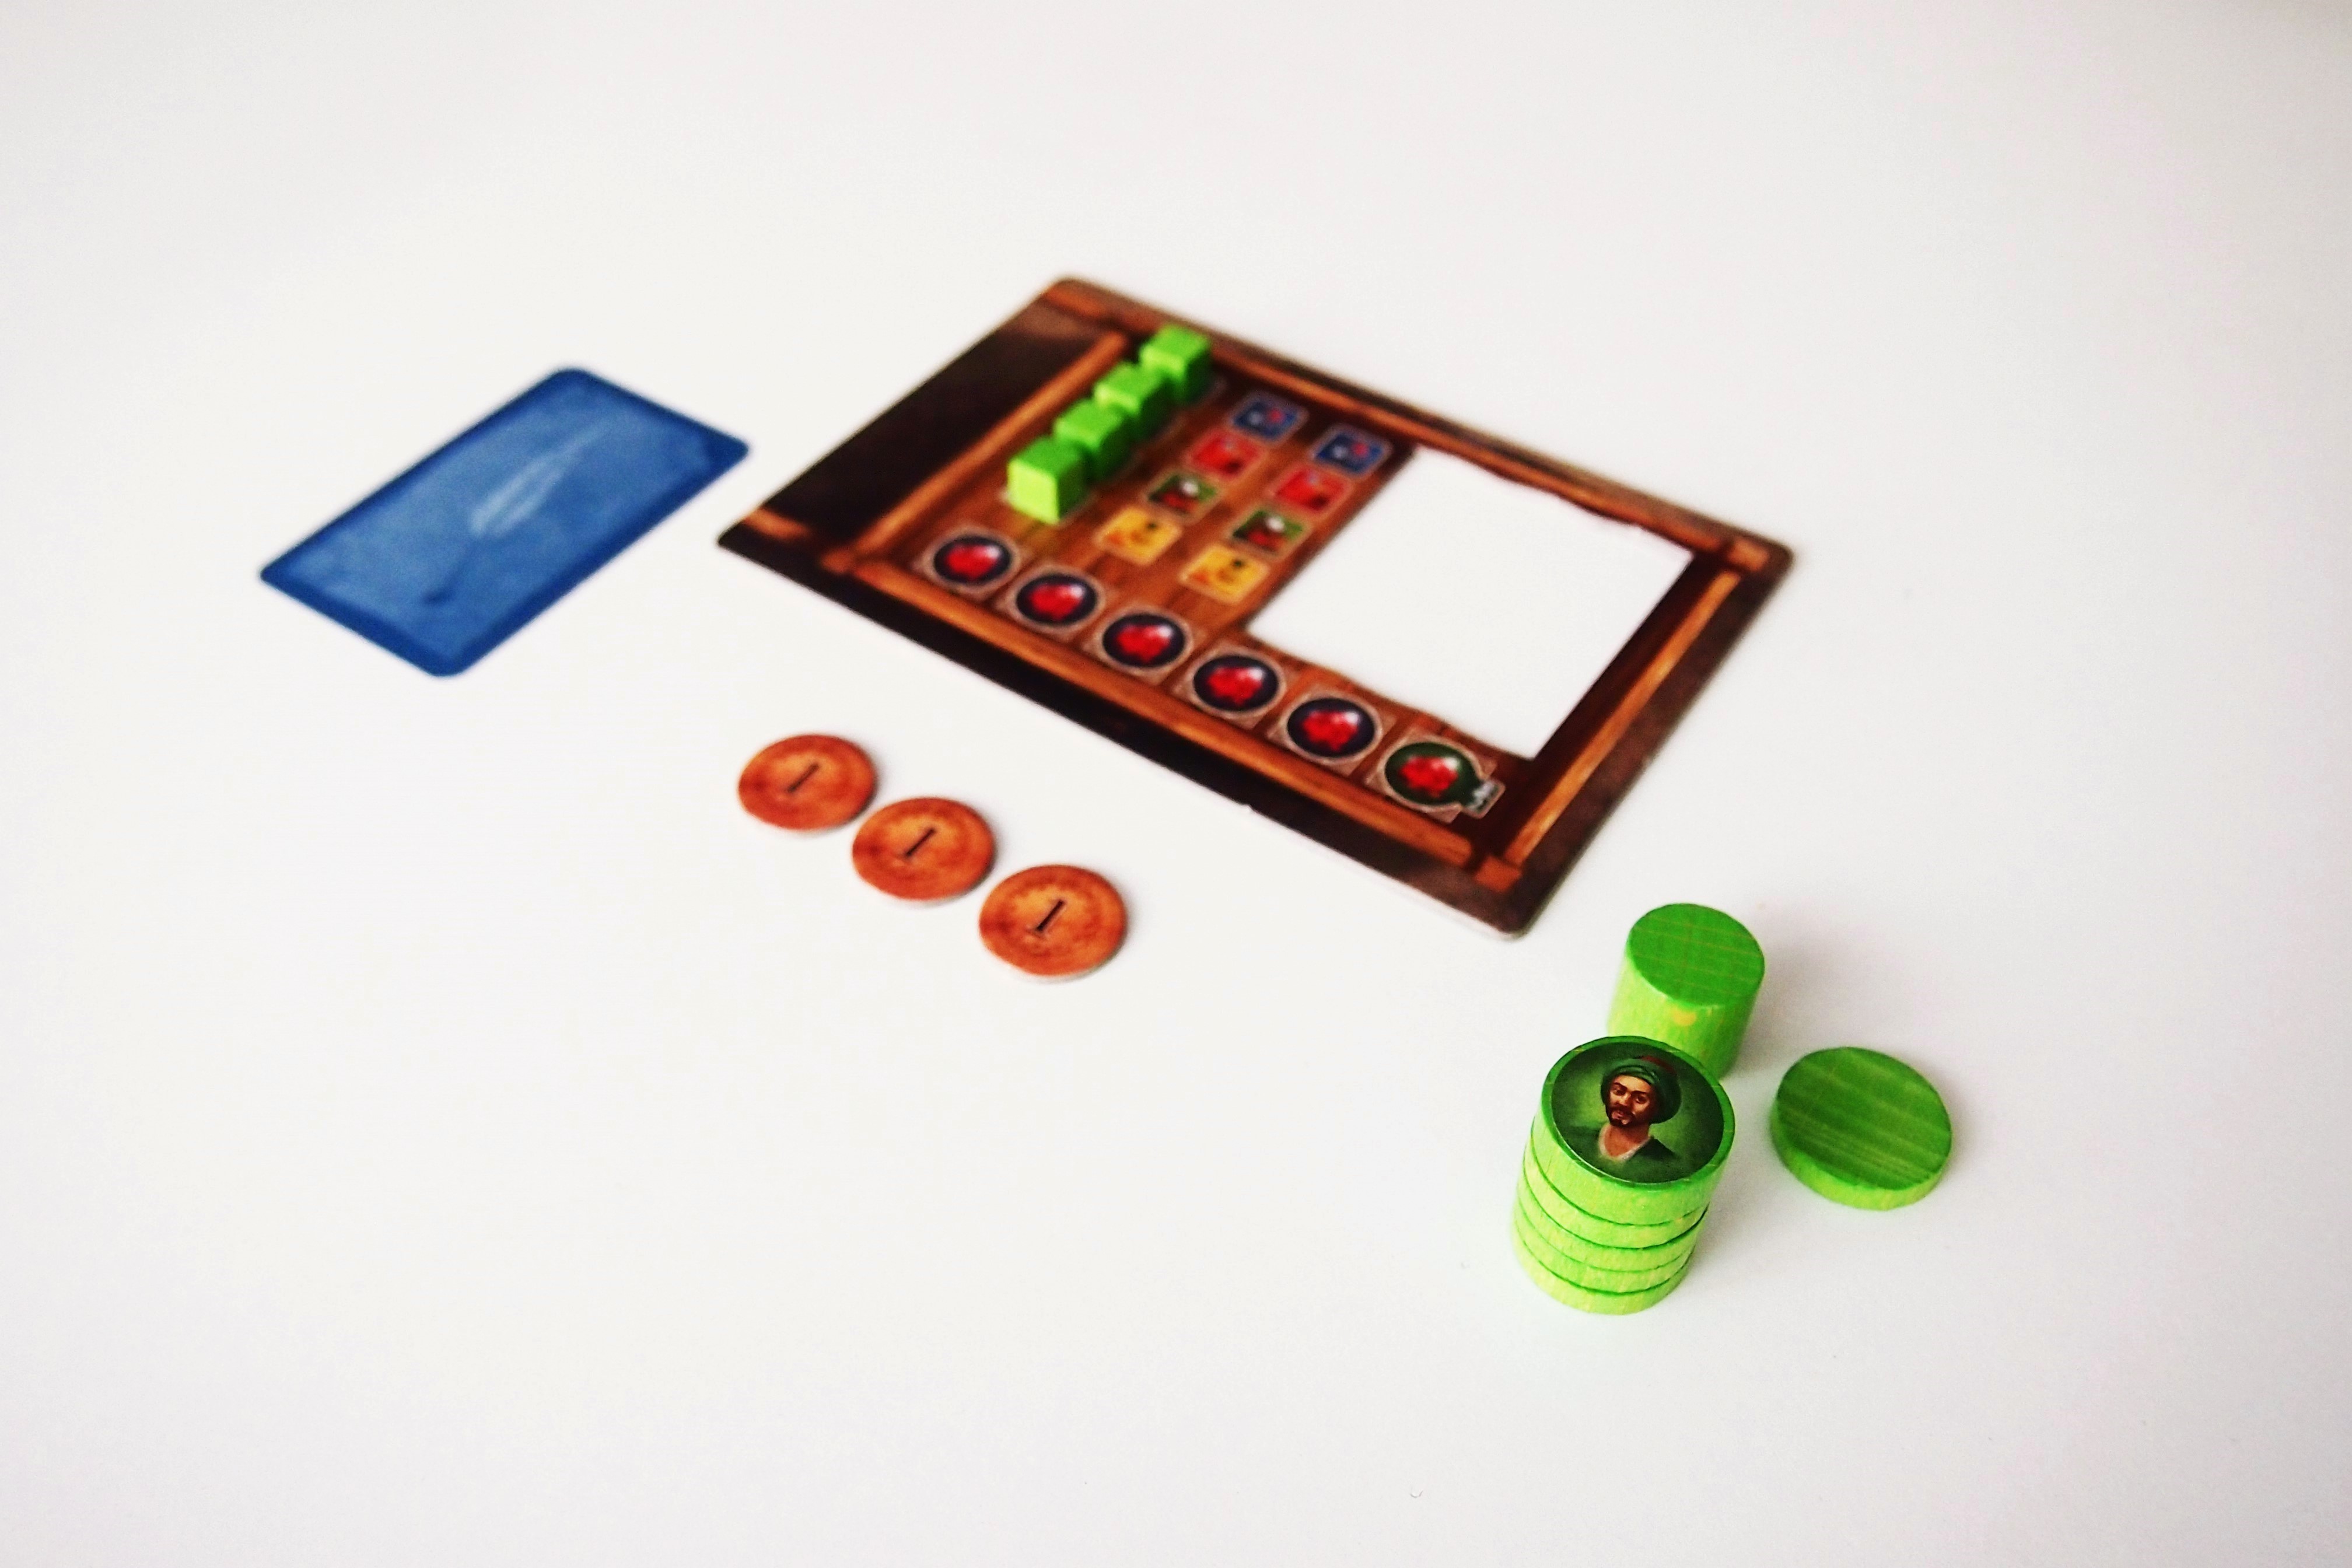 Antes de empezar, se reparte una carretilla a cada jugador, las fichas de su color, una carta y tantas monedas como correspondan al orden de turno. 